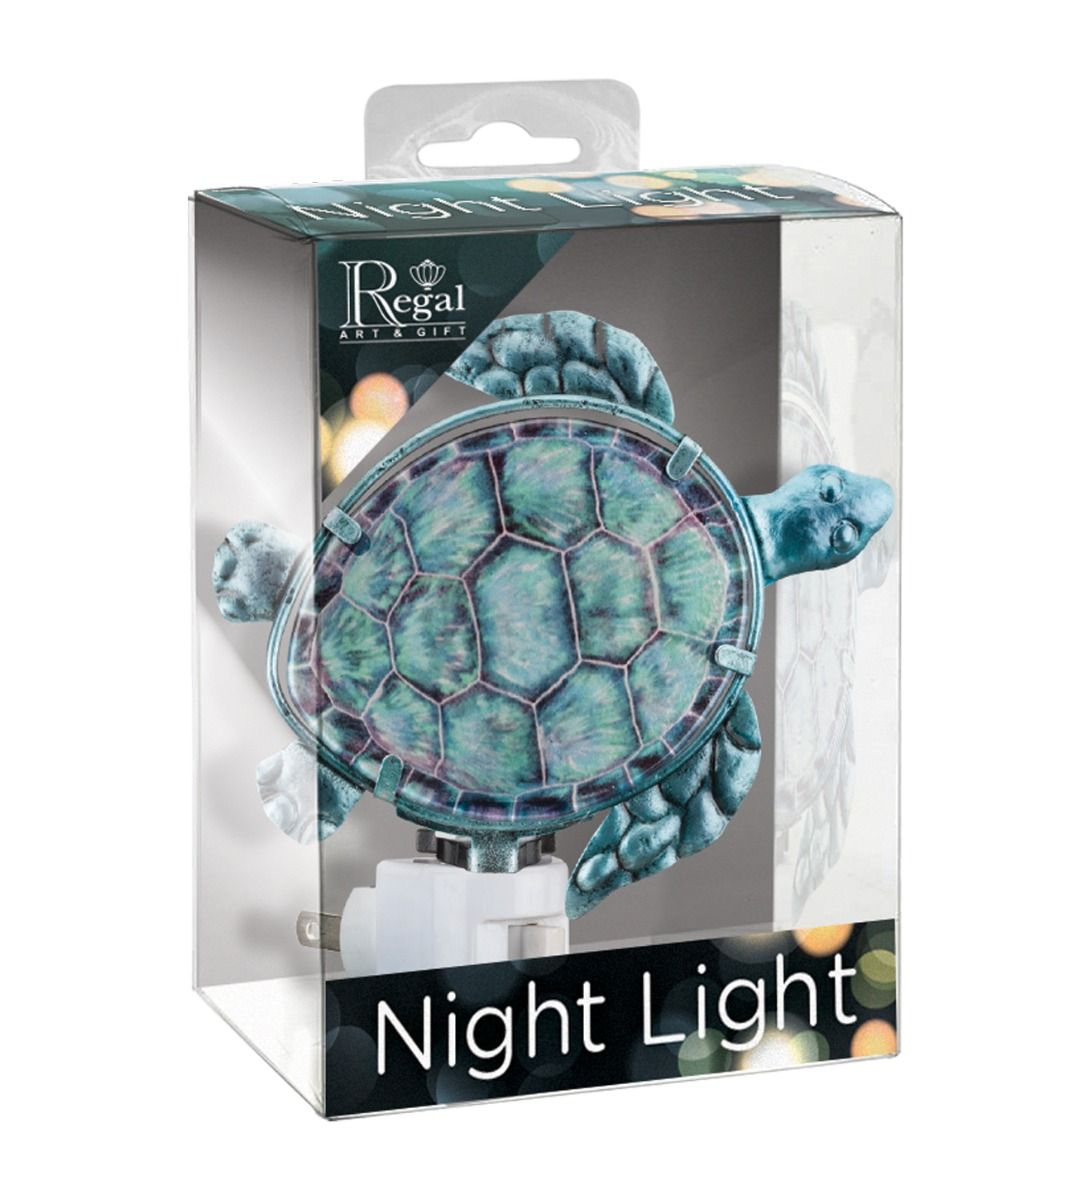 Regal Art & Gift Night Light